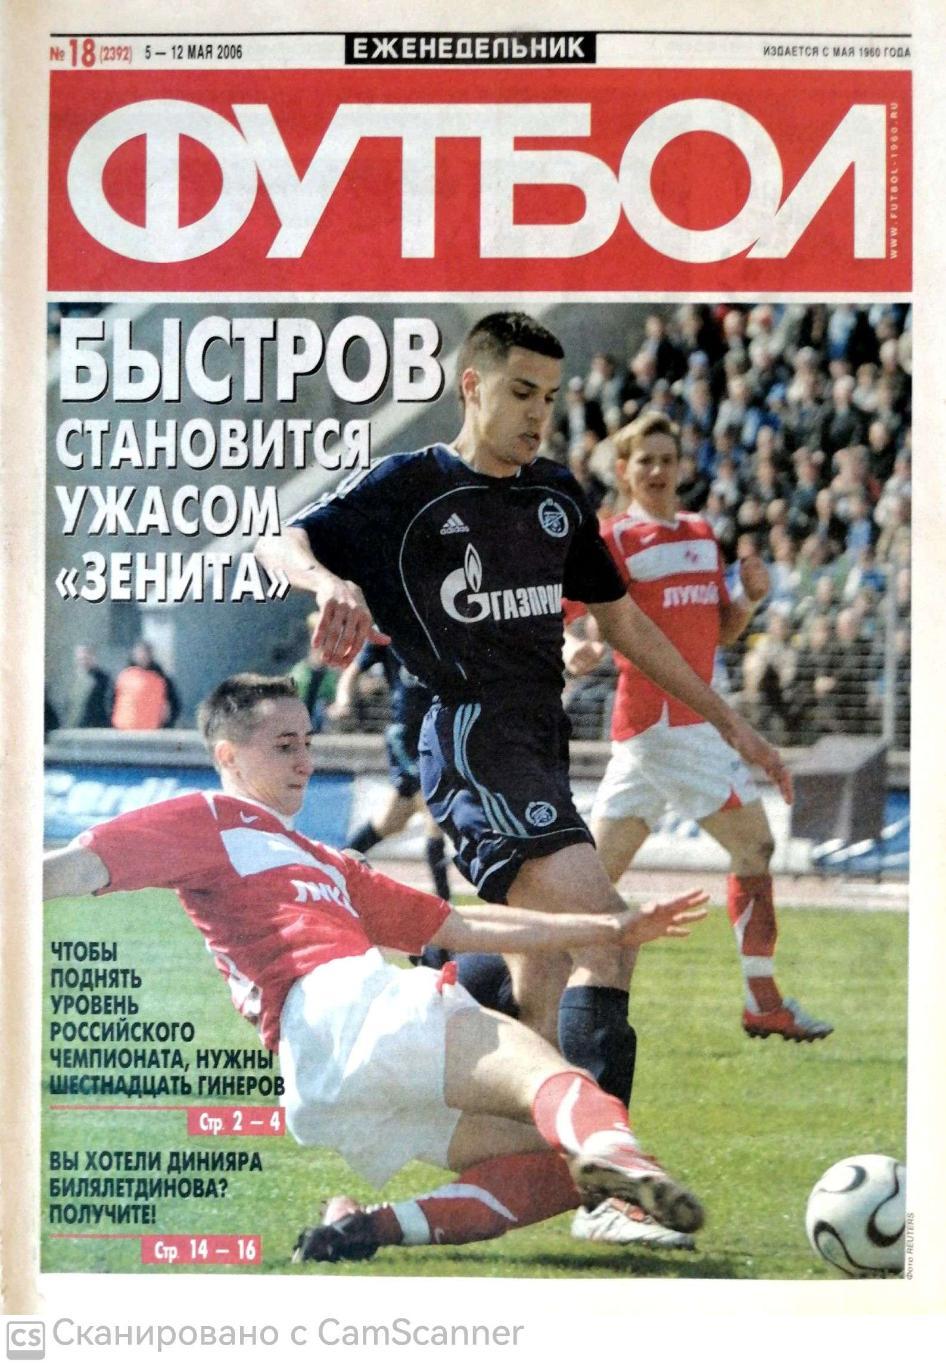 Еженедельник «Футбол» (Москва). 2006 год. №18 быстров